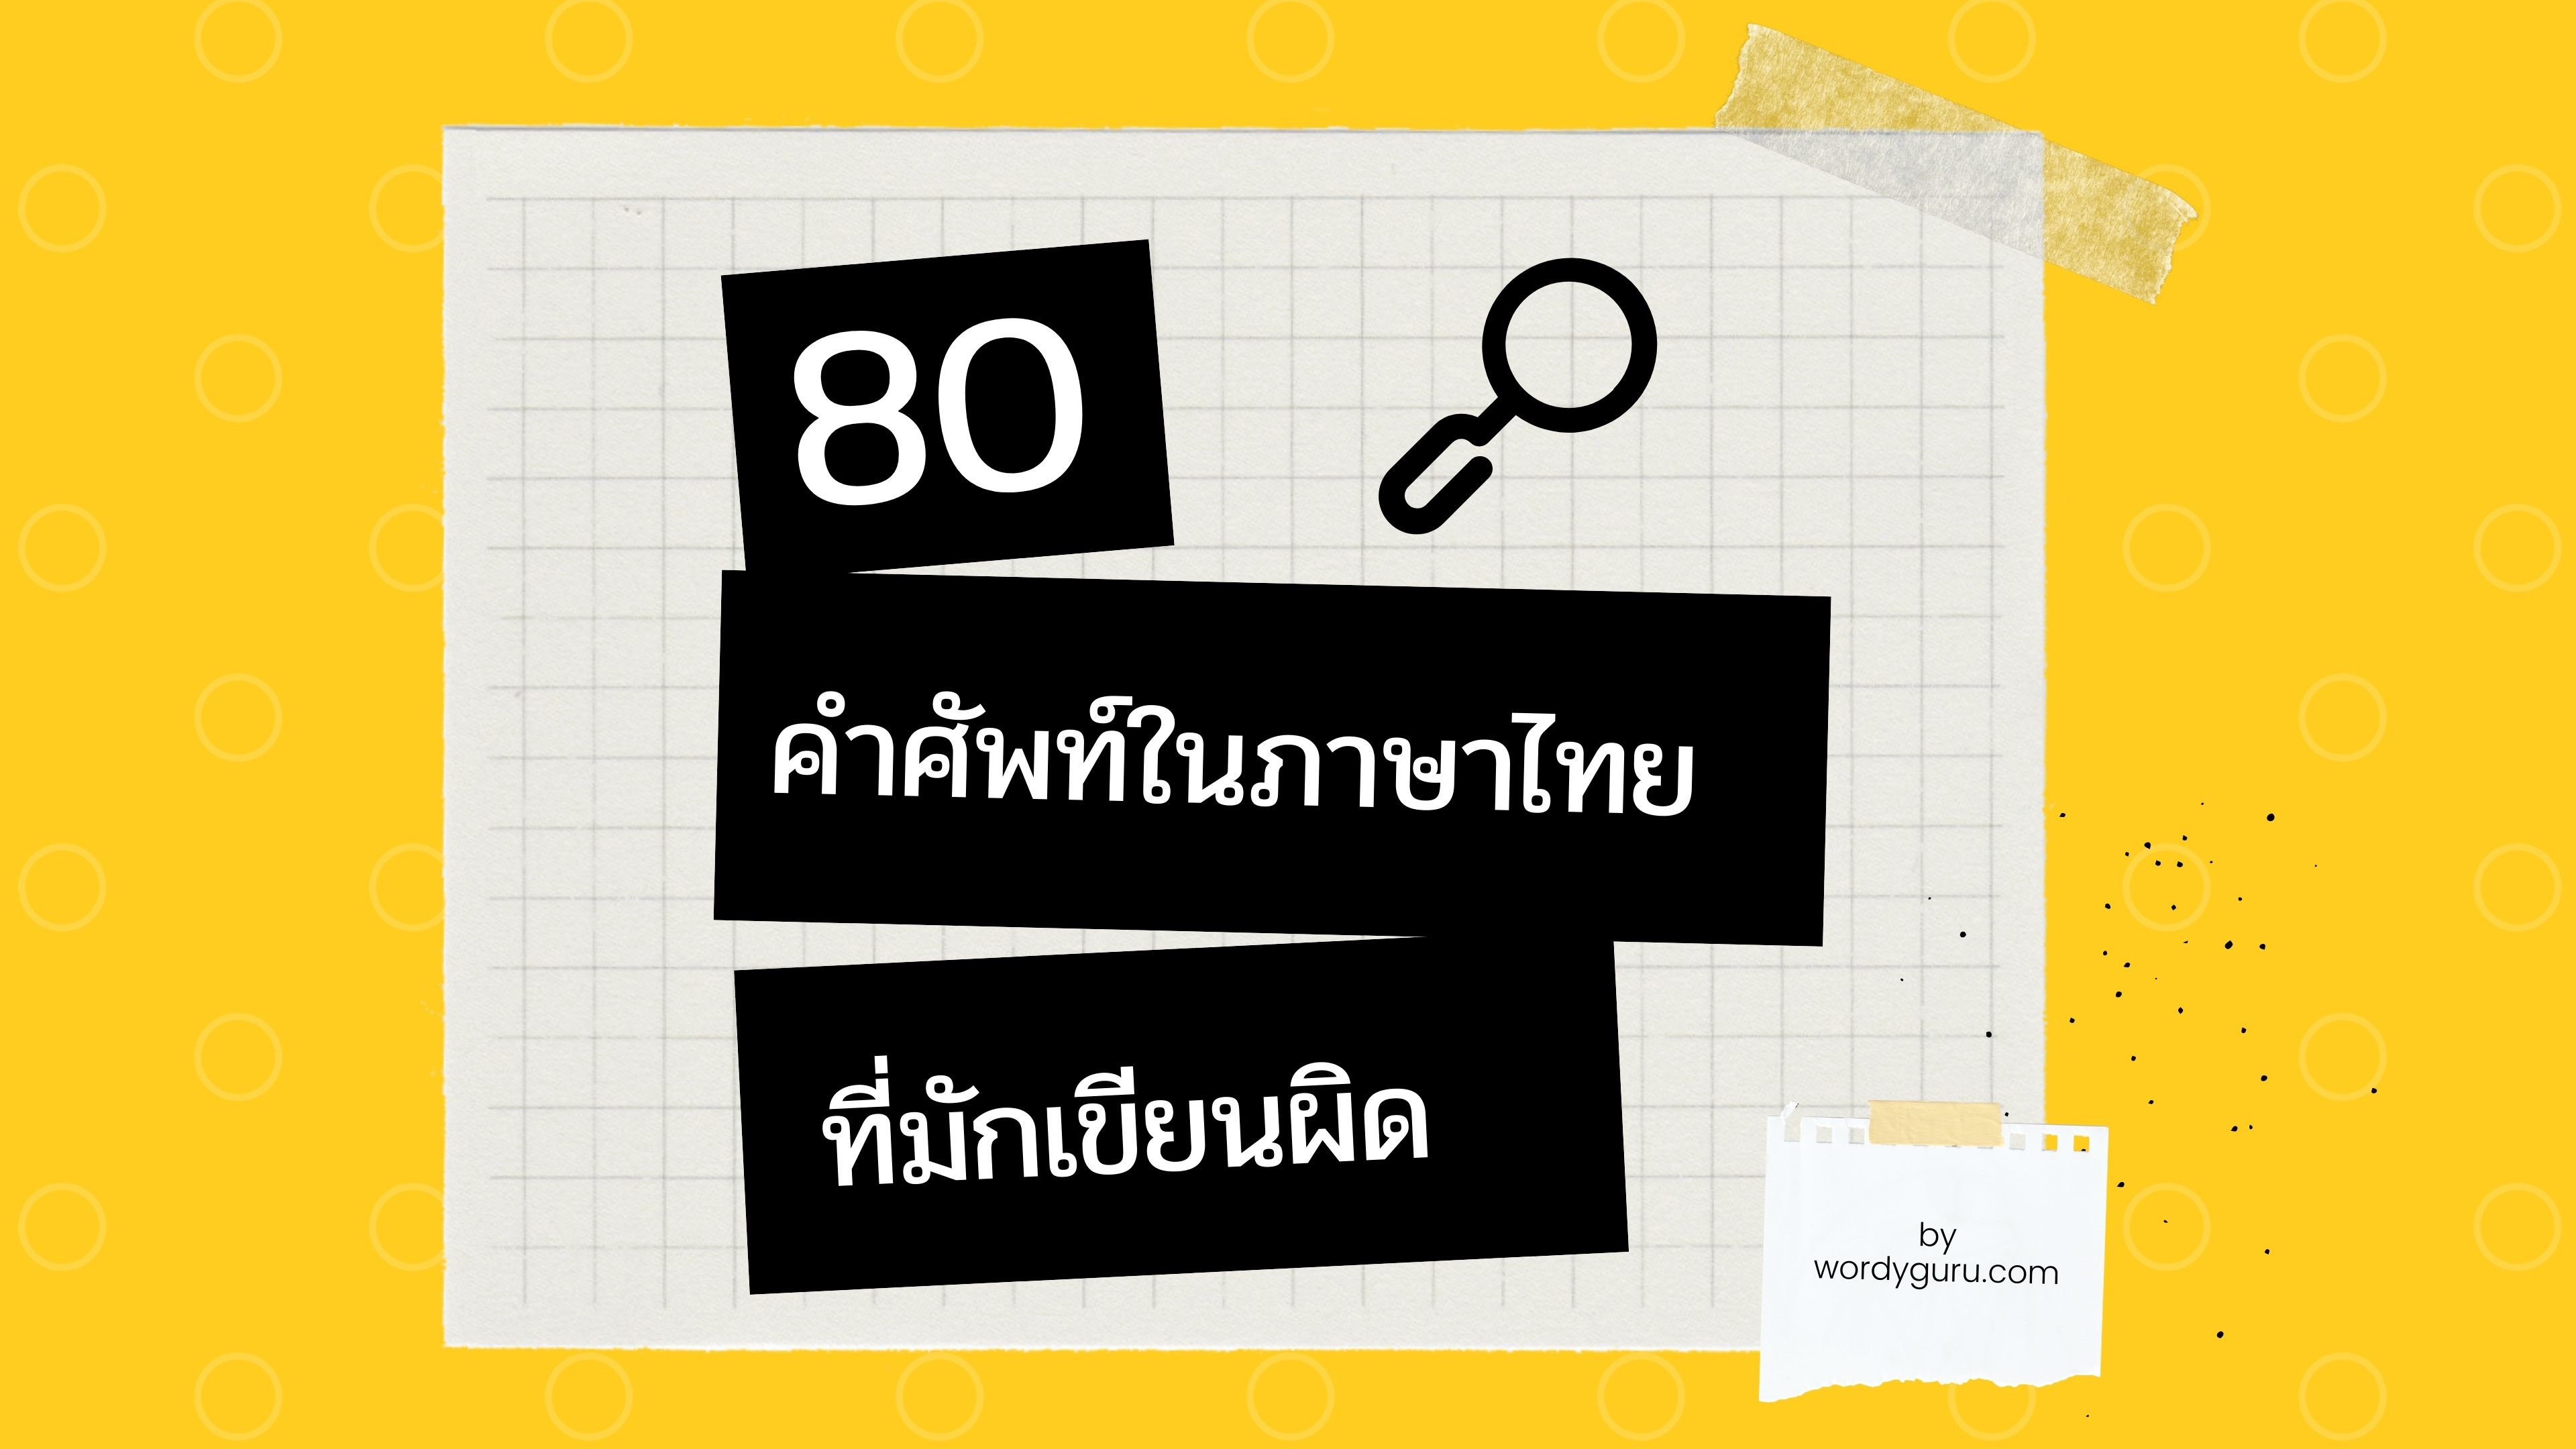 มีคนไทยจำนวนไม่น้อยต้องประสบกับปัญหาเรื่องคำศัพท์ในภาษาไทย ที่สุดแสนจะสะกดและเขียนให้ถูกยากเหลือเกิน